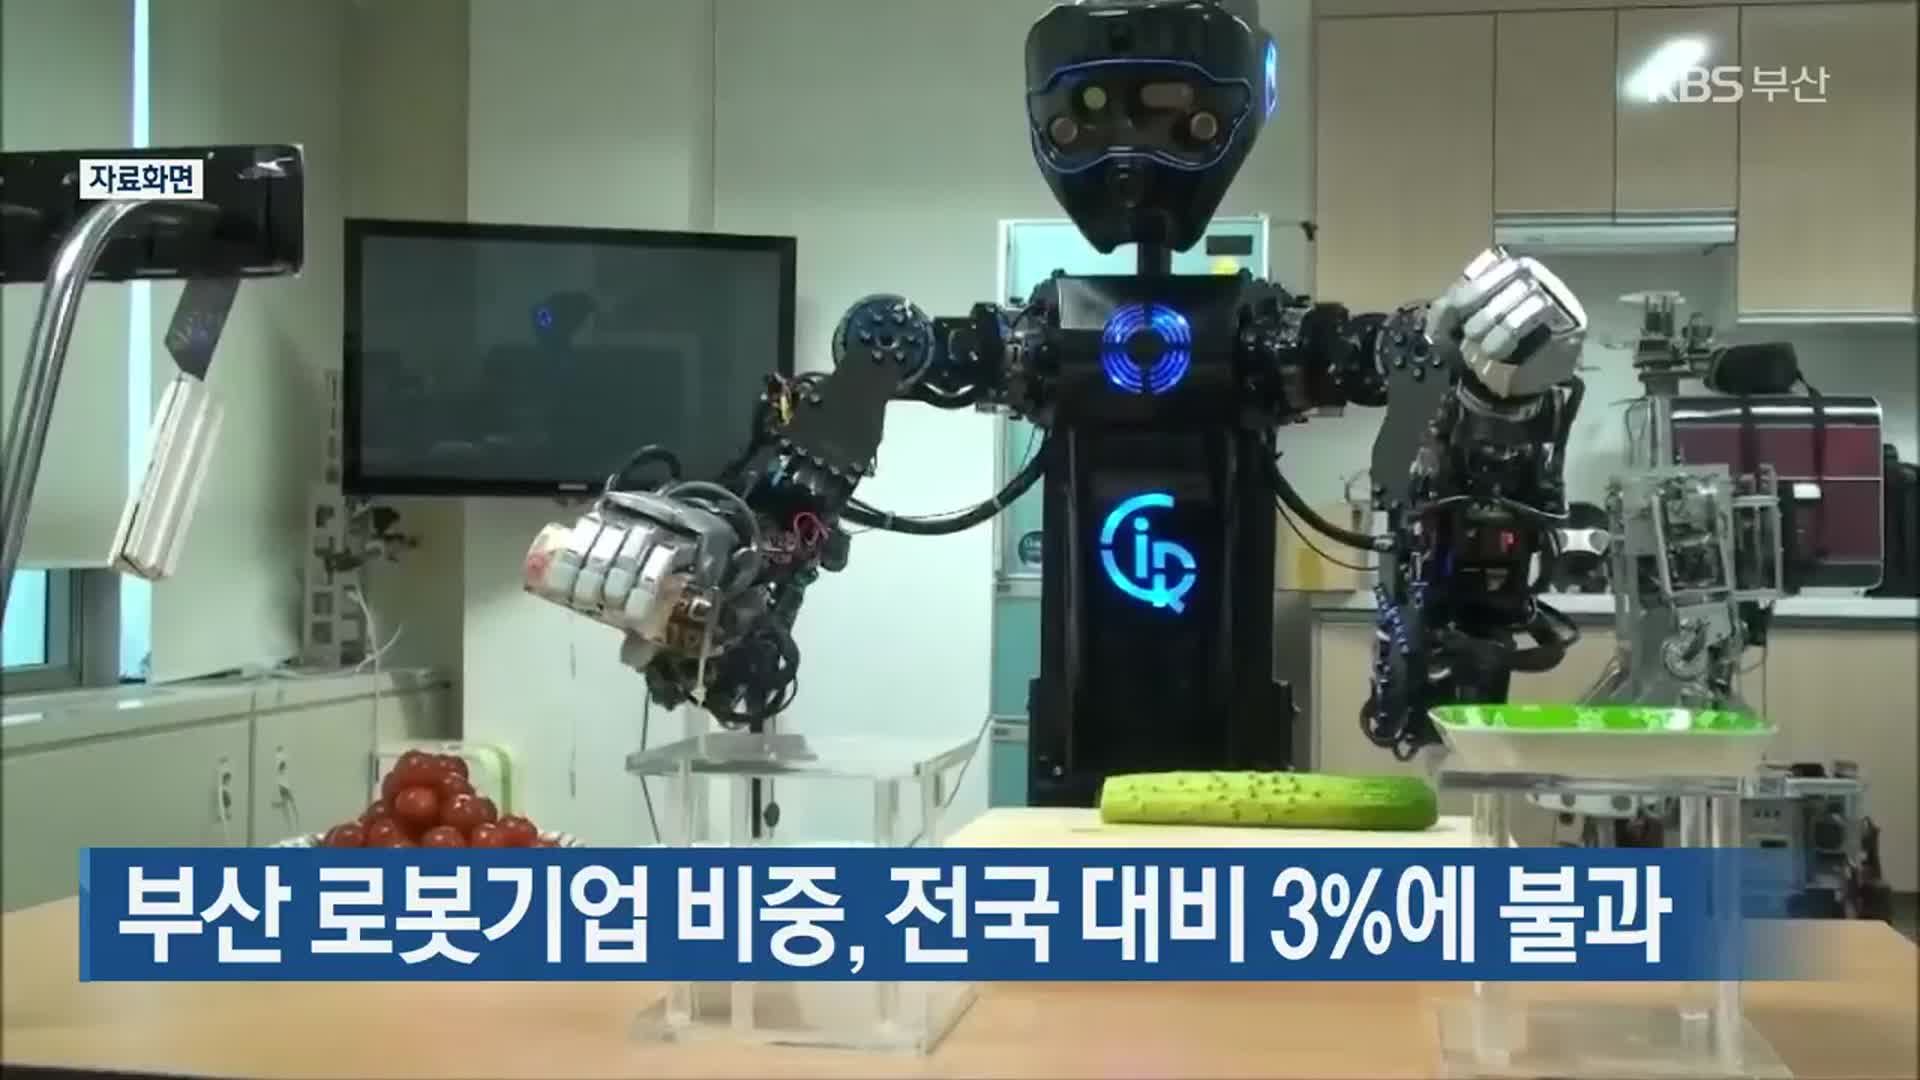 부산 로봇기업 비중, 전국 대비 3%에 불과